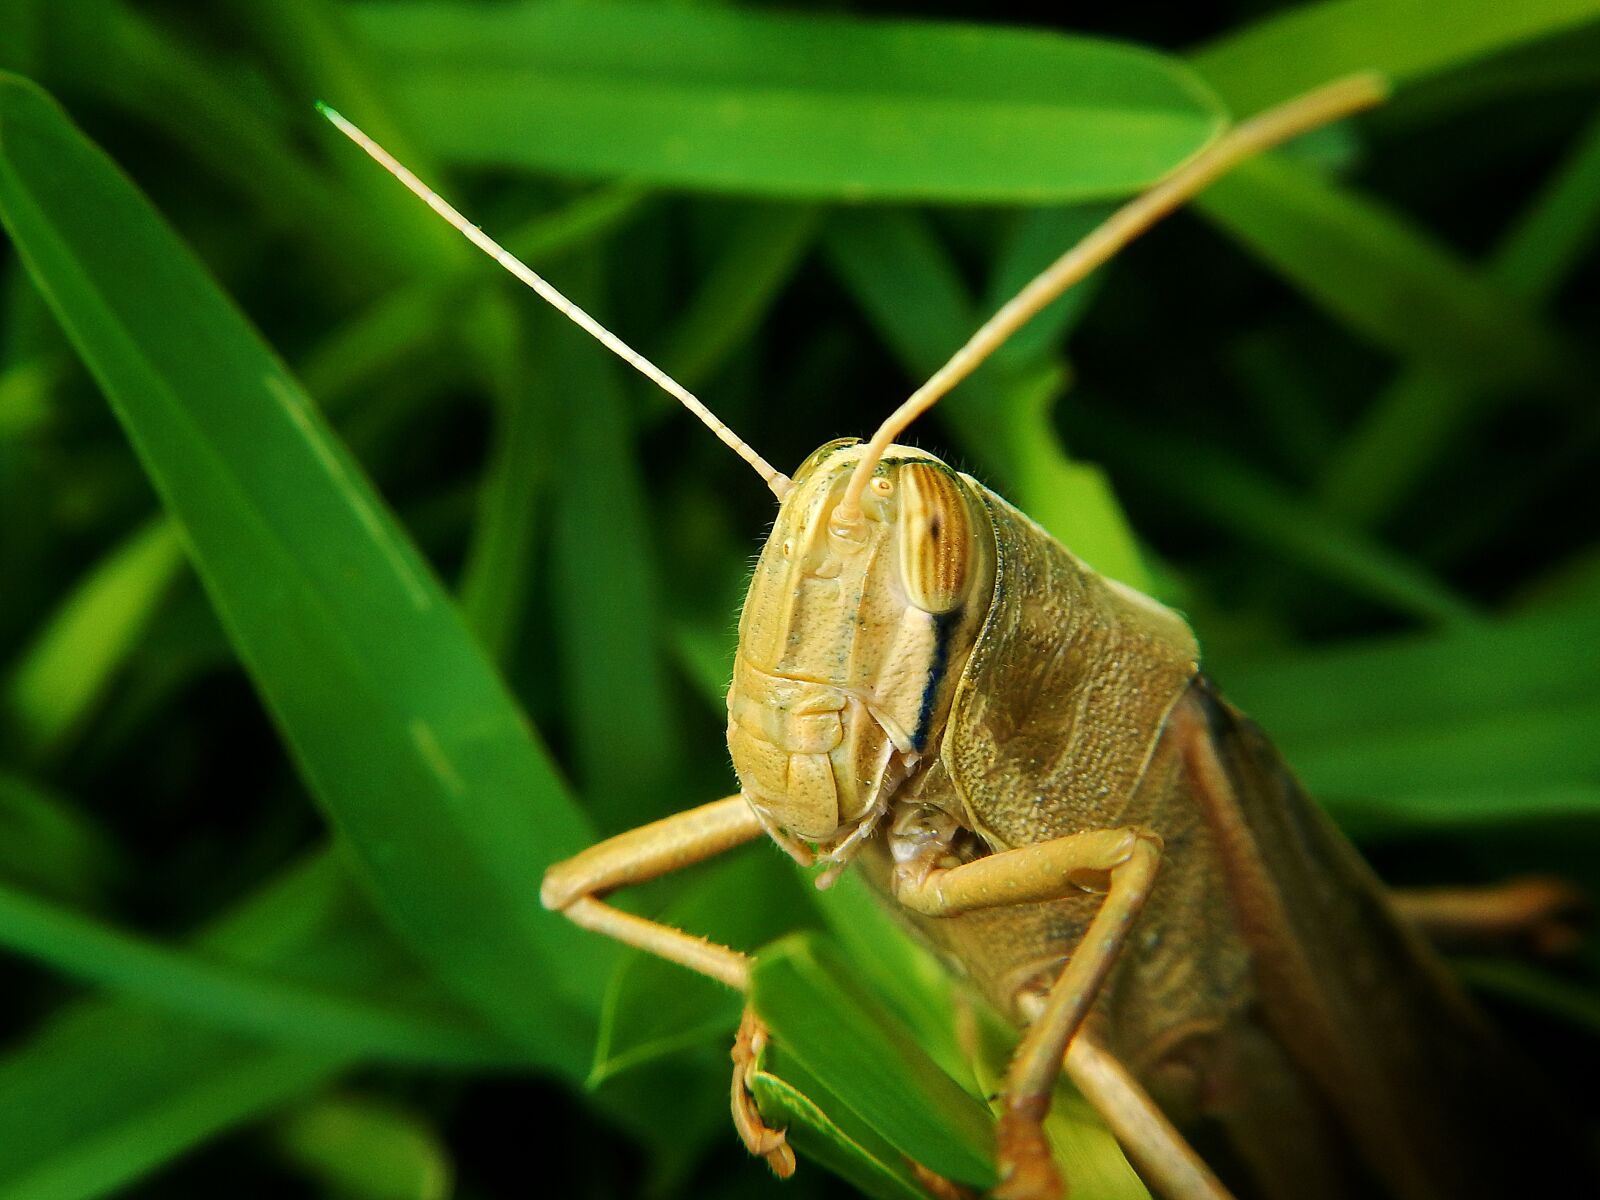 Nikon Coolpix AW110 sample photo. Grasshopper, herbivore, garden photography